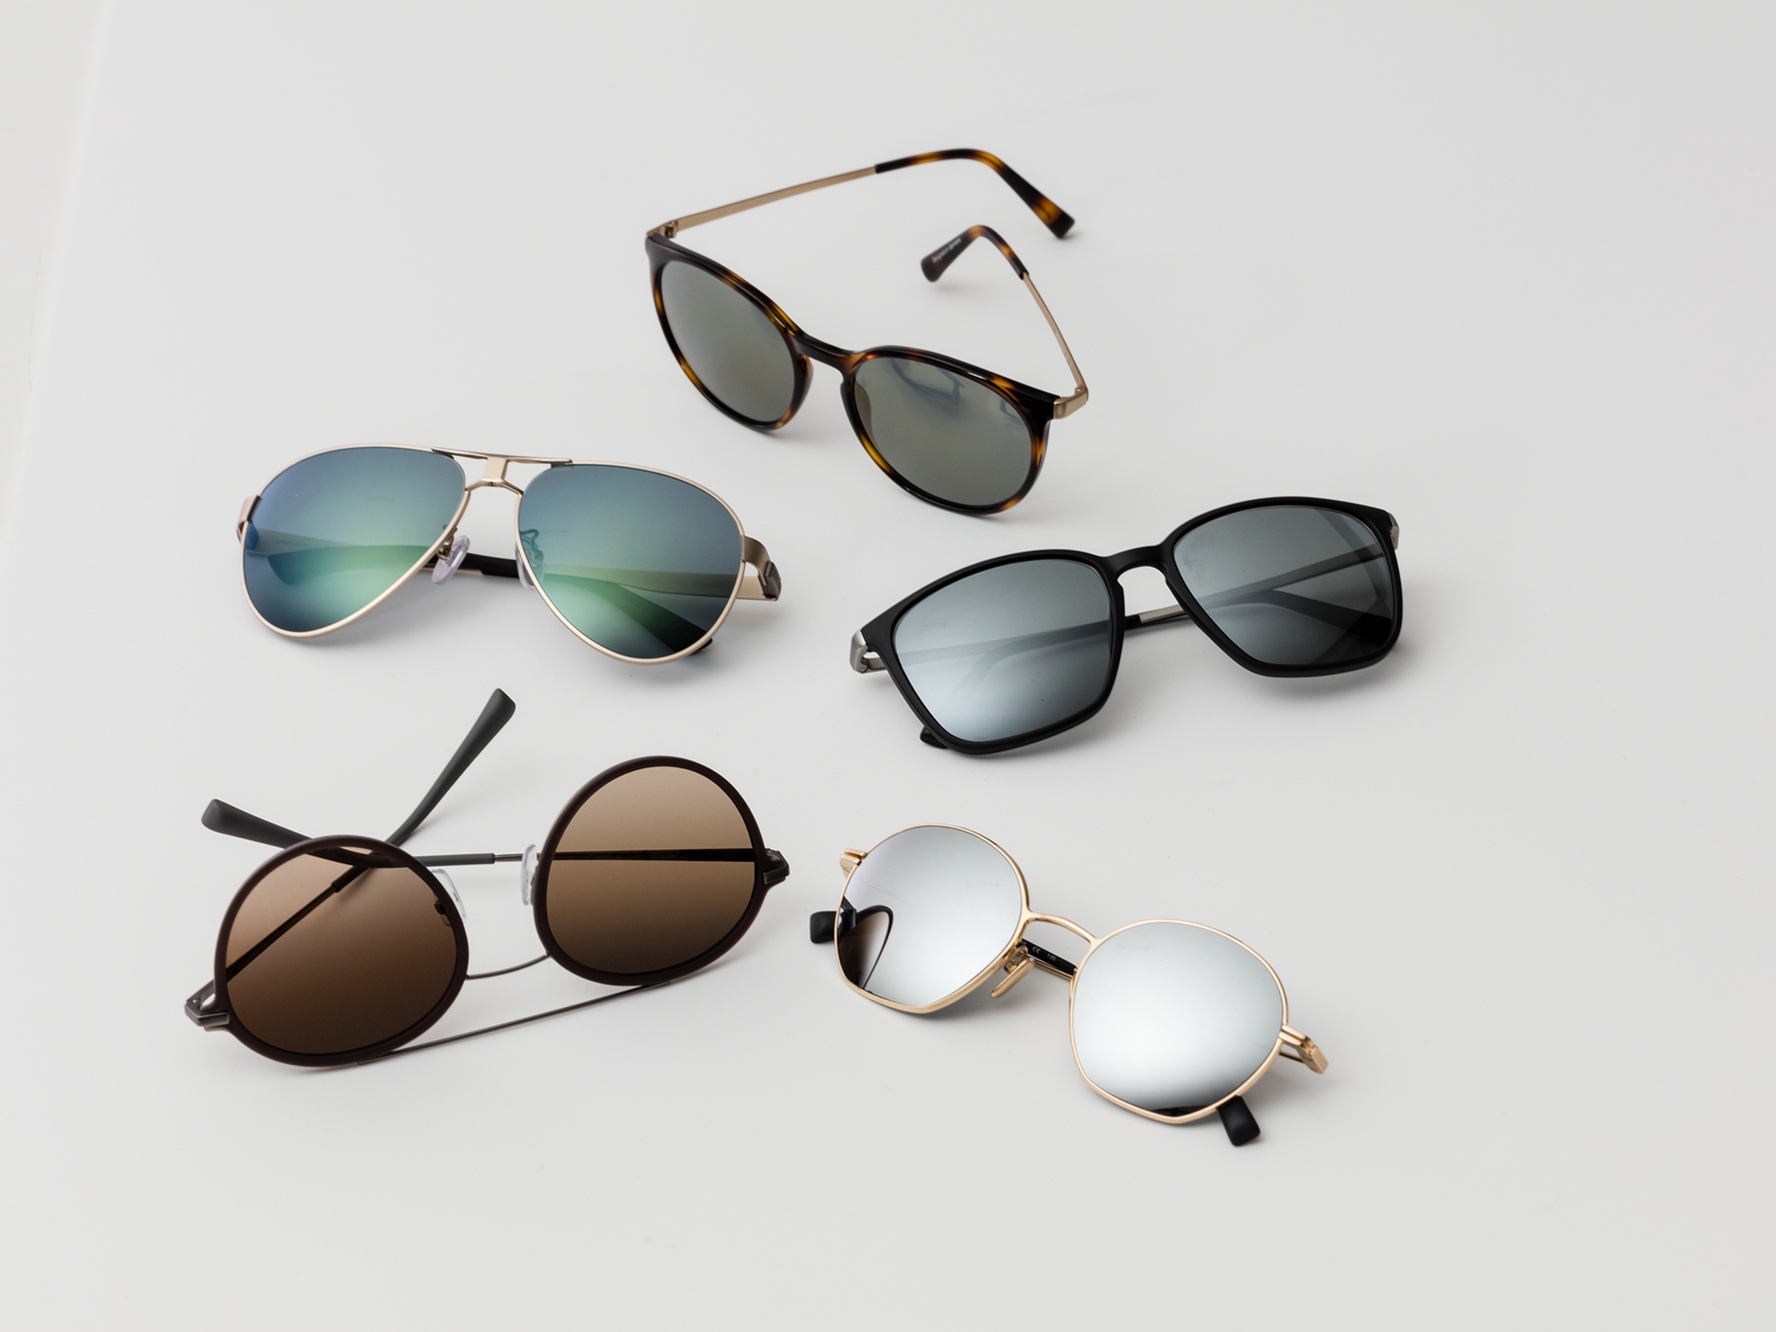 Cinci perechi de ochelari de soare, care arată nuanțele clasice de protecție solară pentru condiții de lumină medie sau puternică.